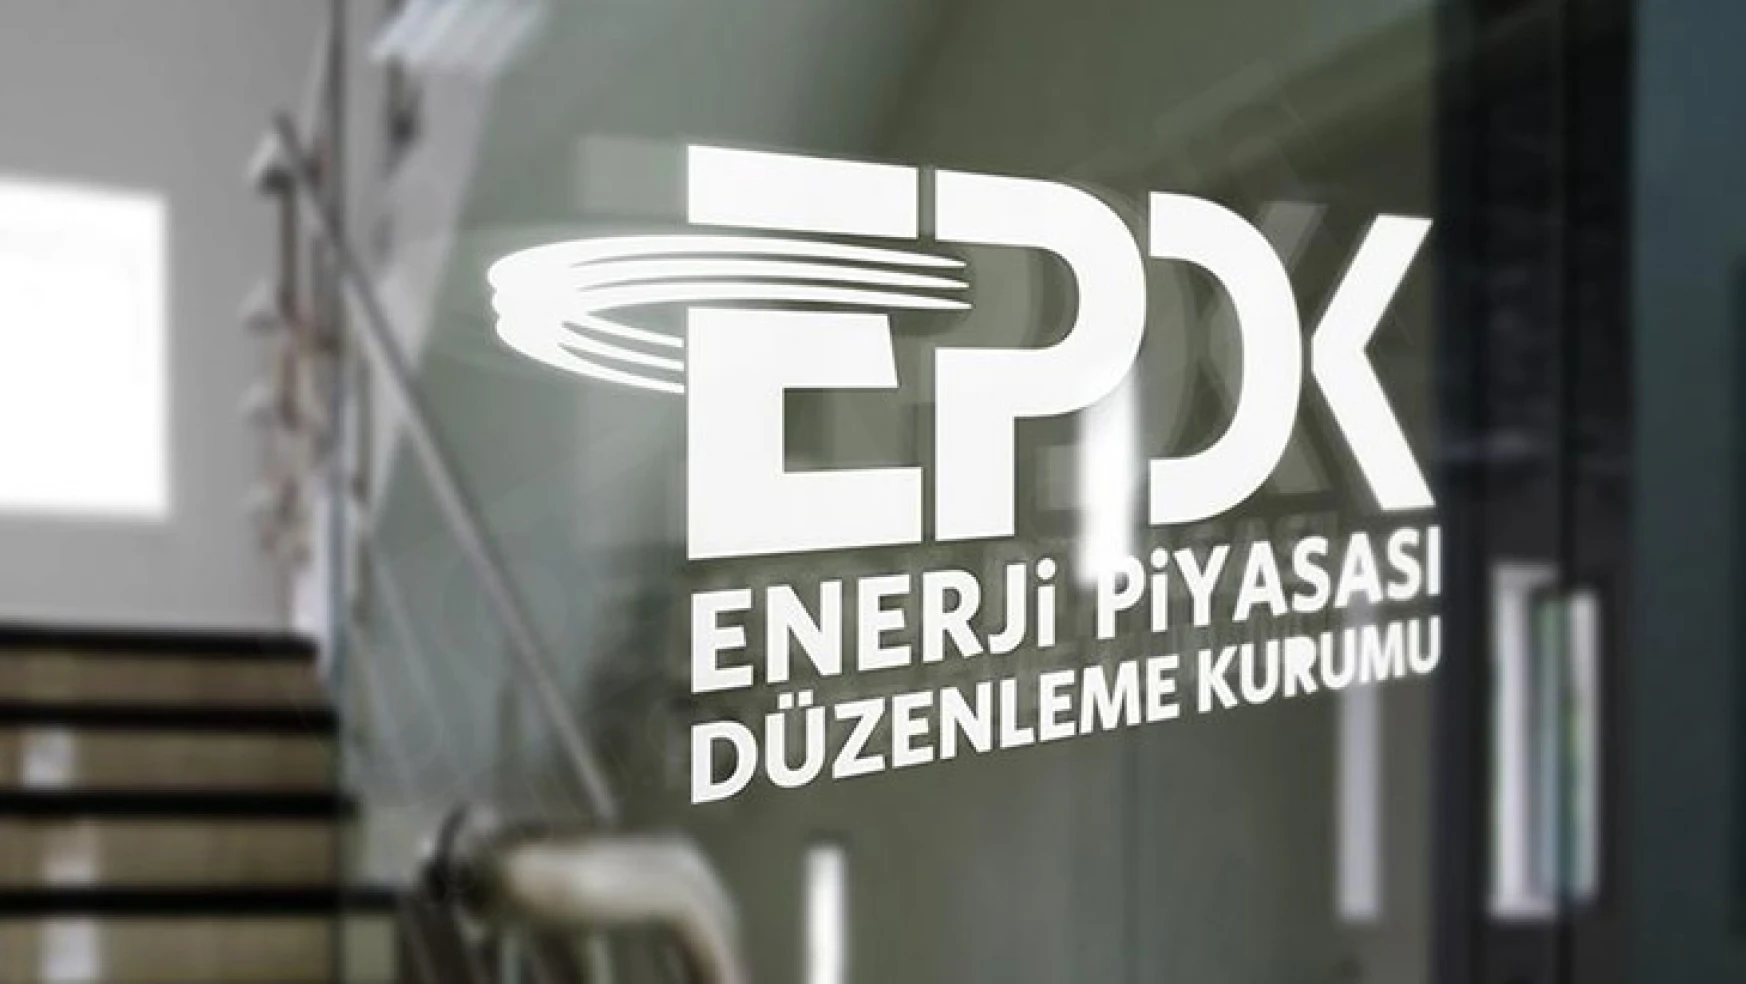 EPDK, akaryakıt şirketinin depolama tarifesinde değişikliğe gitti